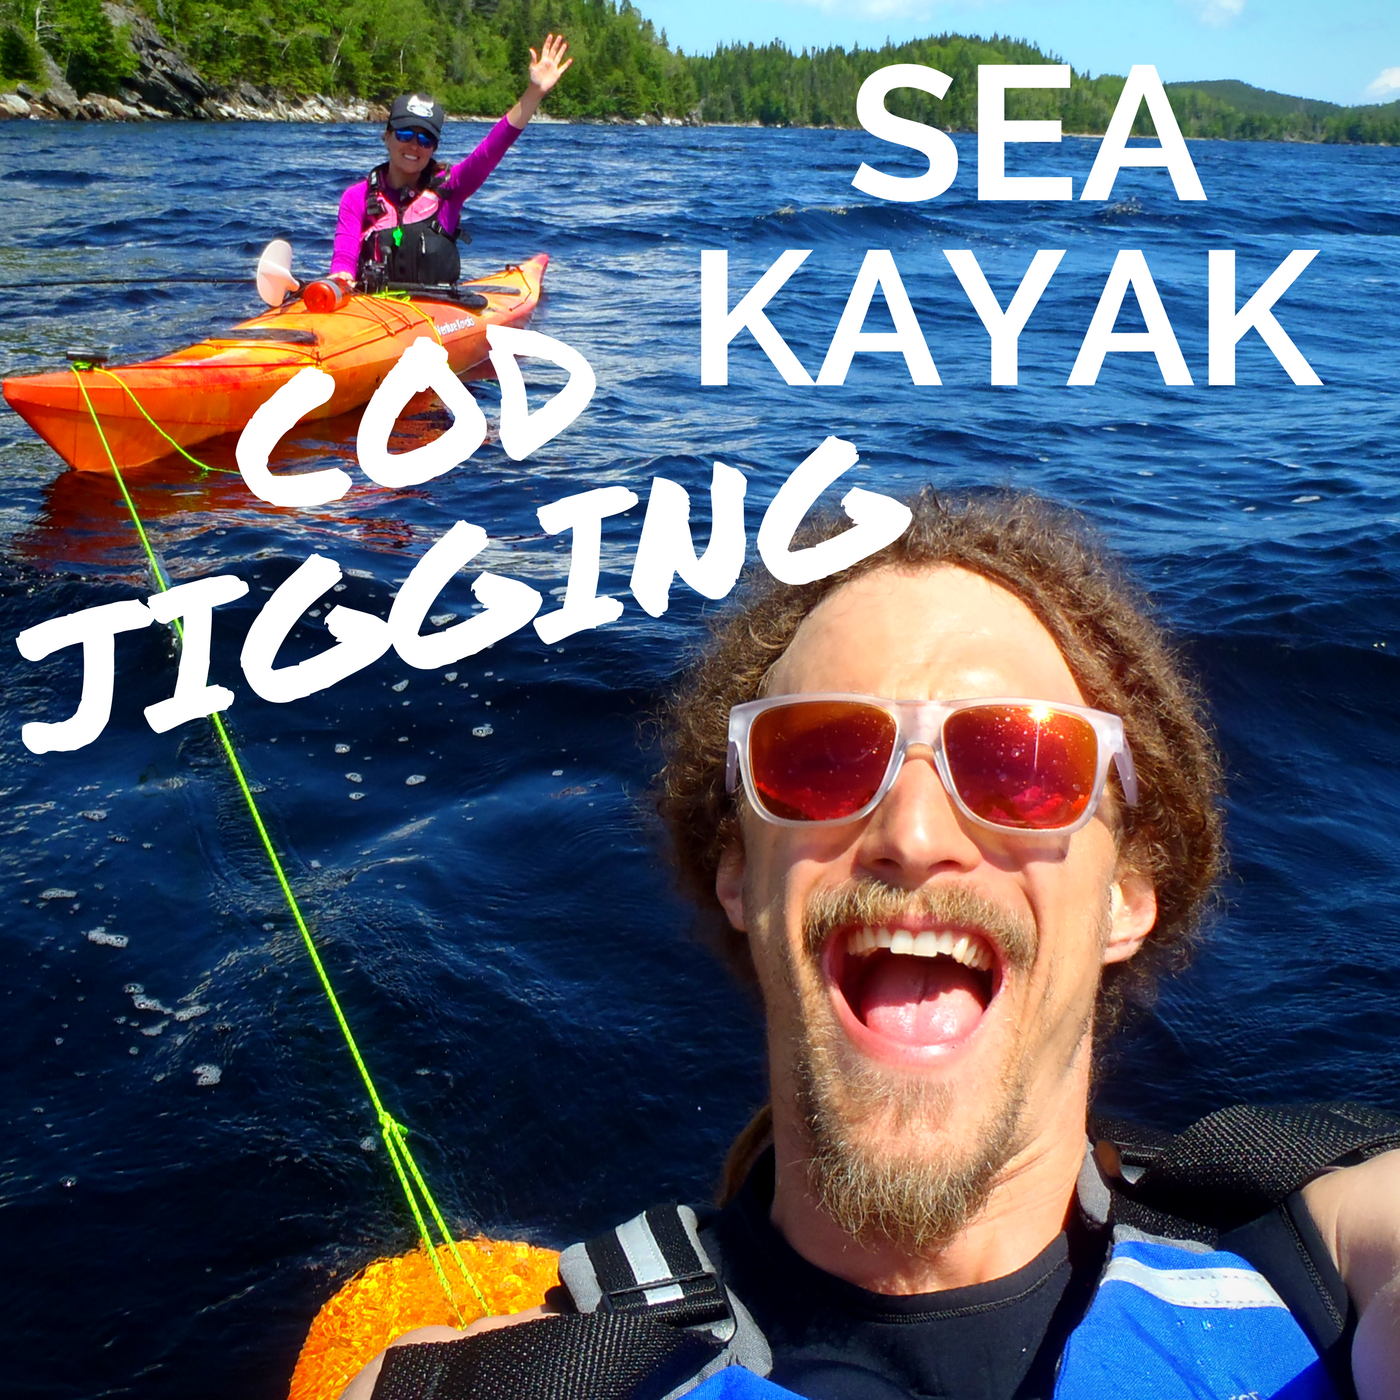 Cod jigging Kayaking, Wildly Intrepid